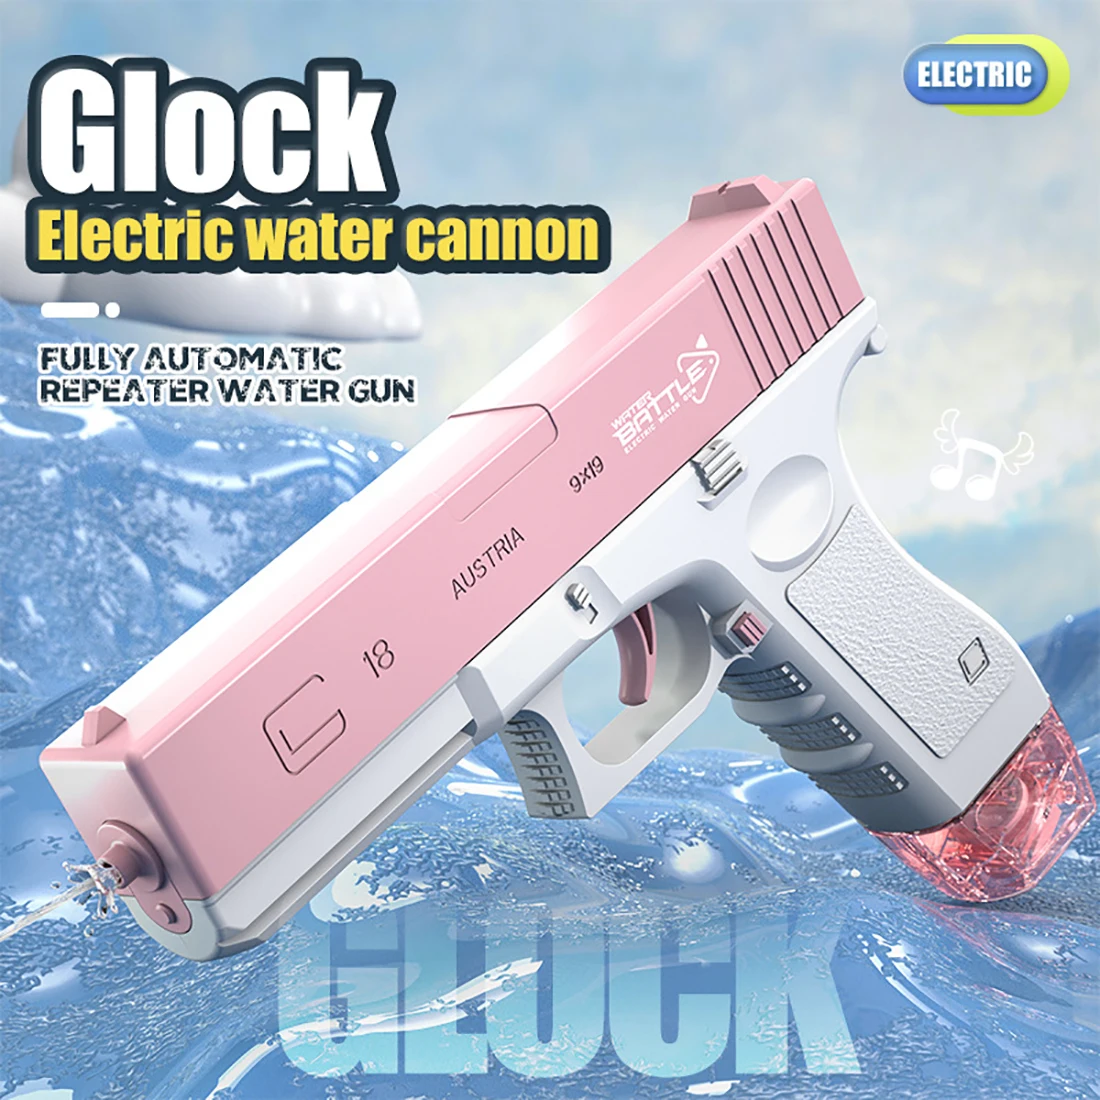 

Автоматический водяной пистолет, электрический игрушечный пистолет высокого давления, большой зажим, для летнего бассейна, пляжа